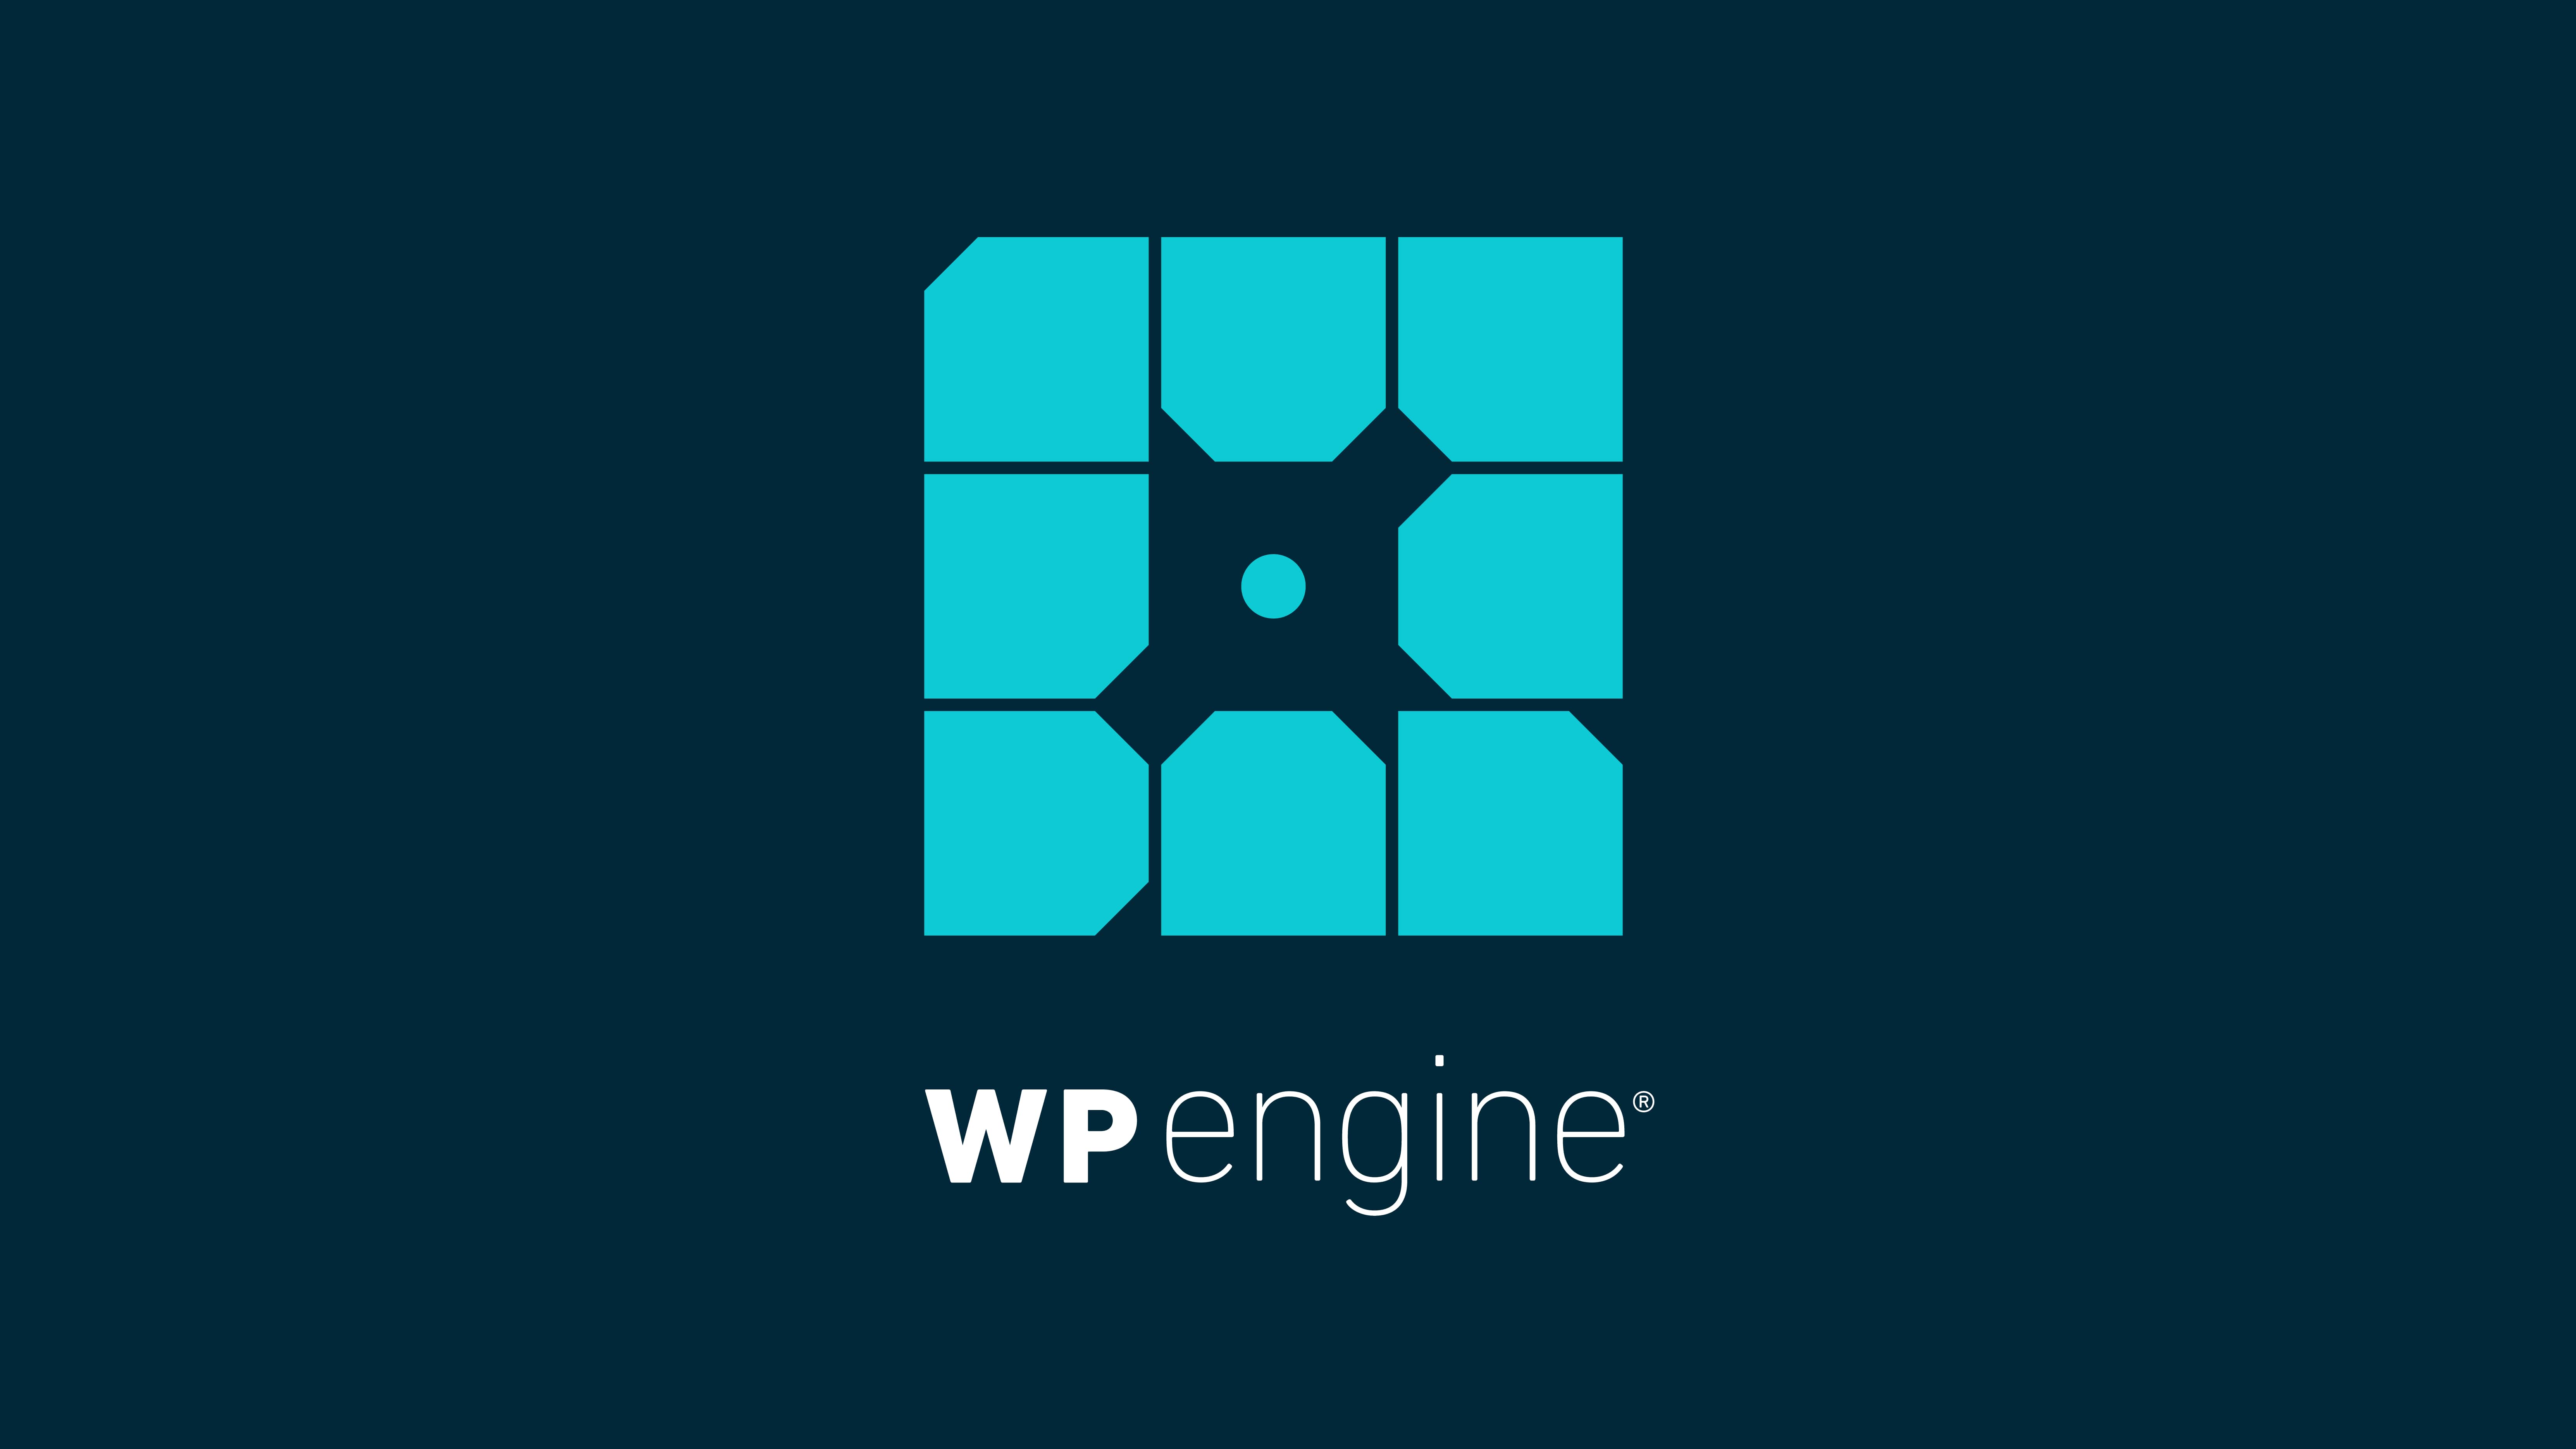 WP Engine logo on dark blue background